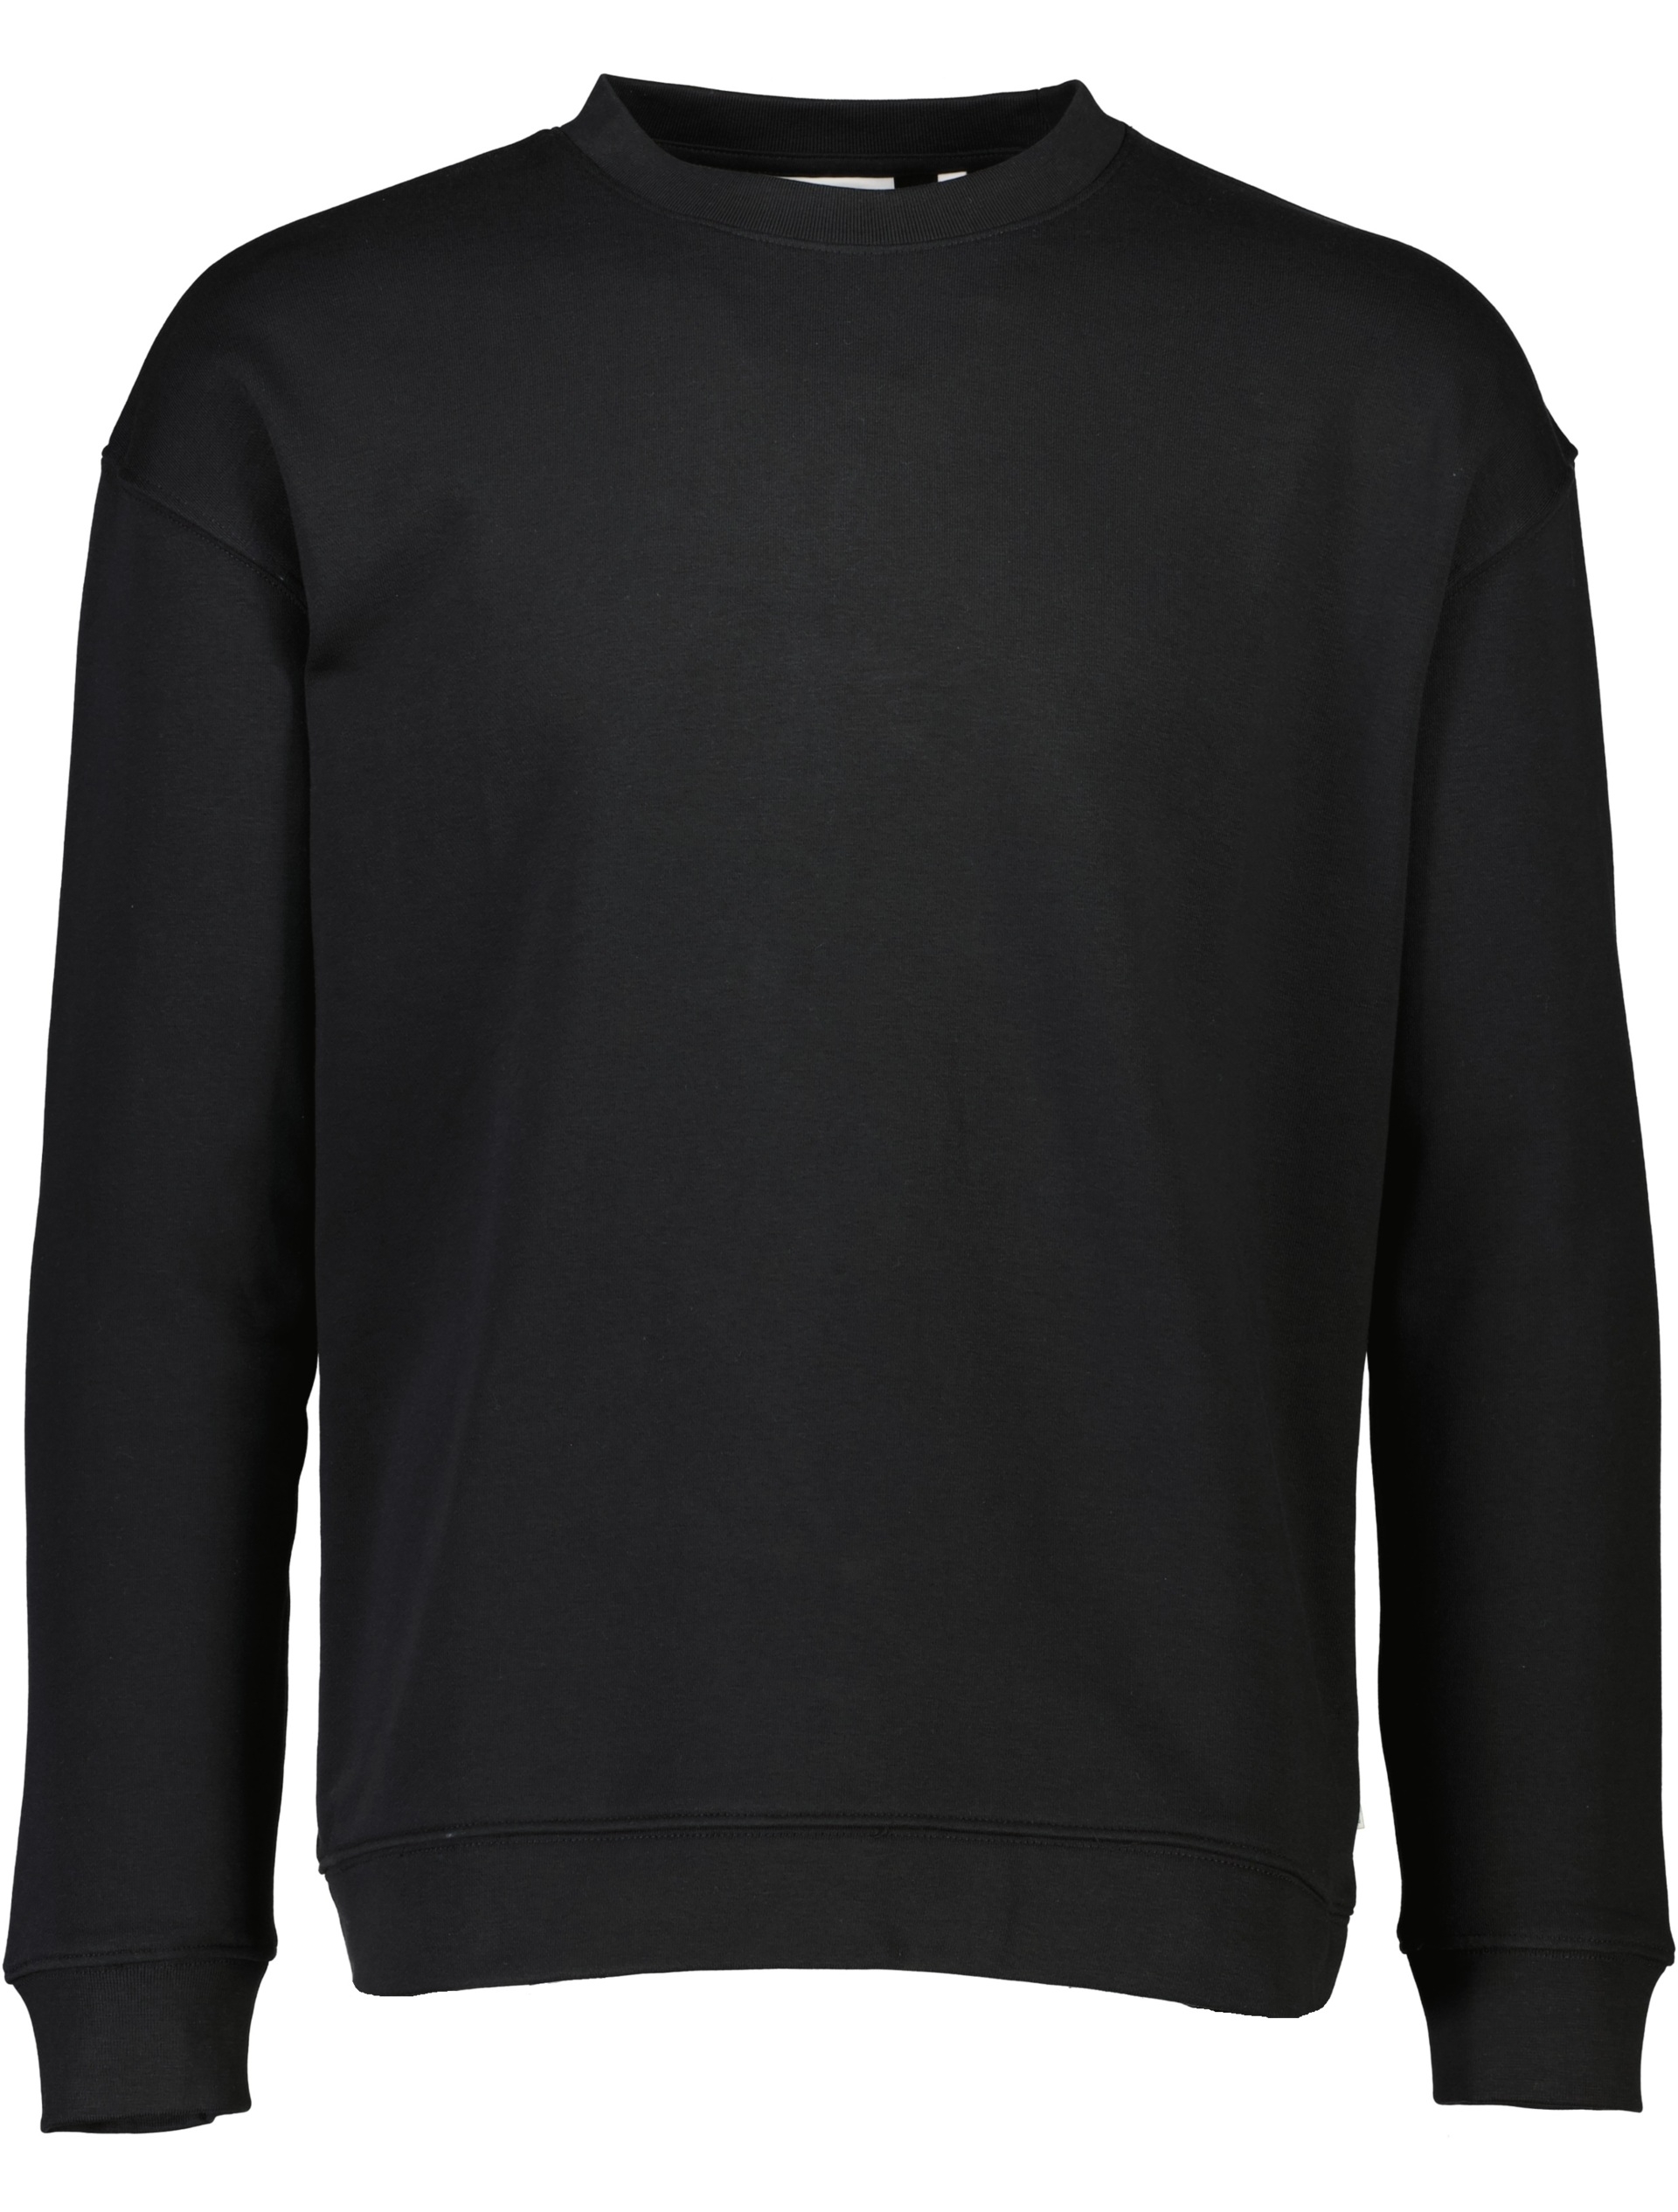 Lindbergh Sweatshirt sort / black